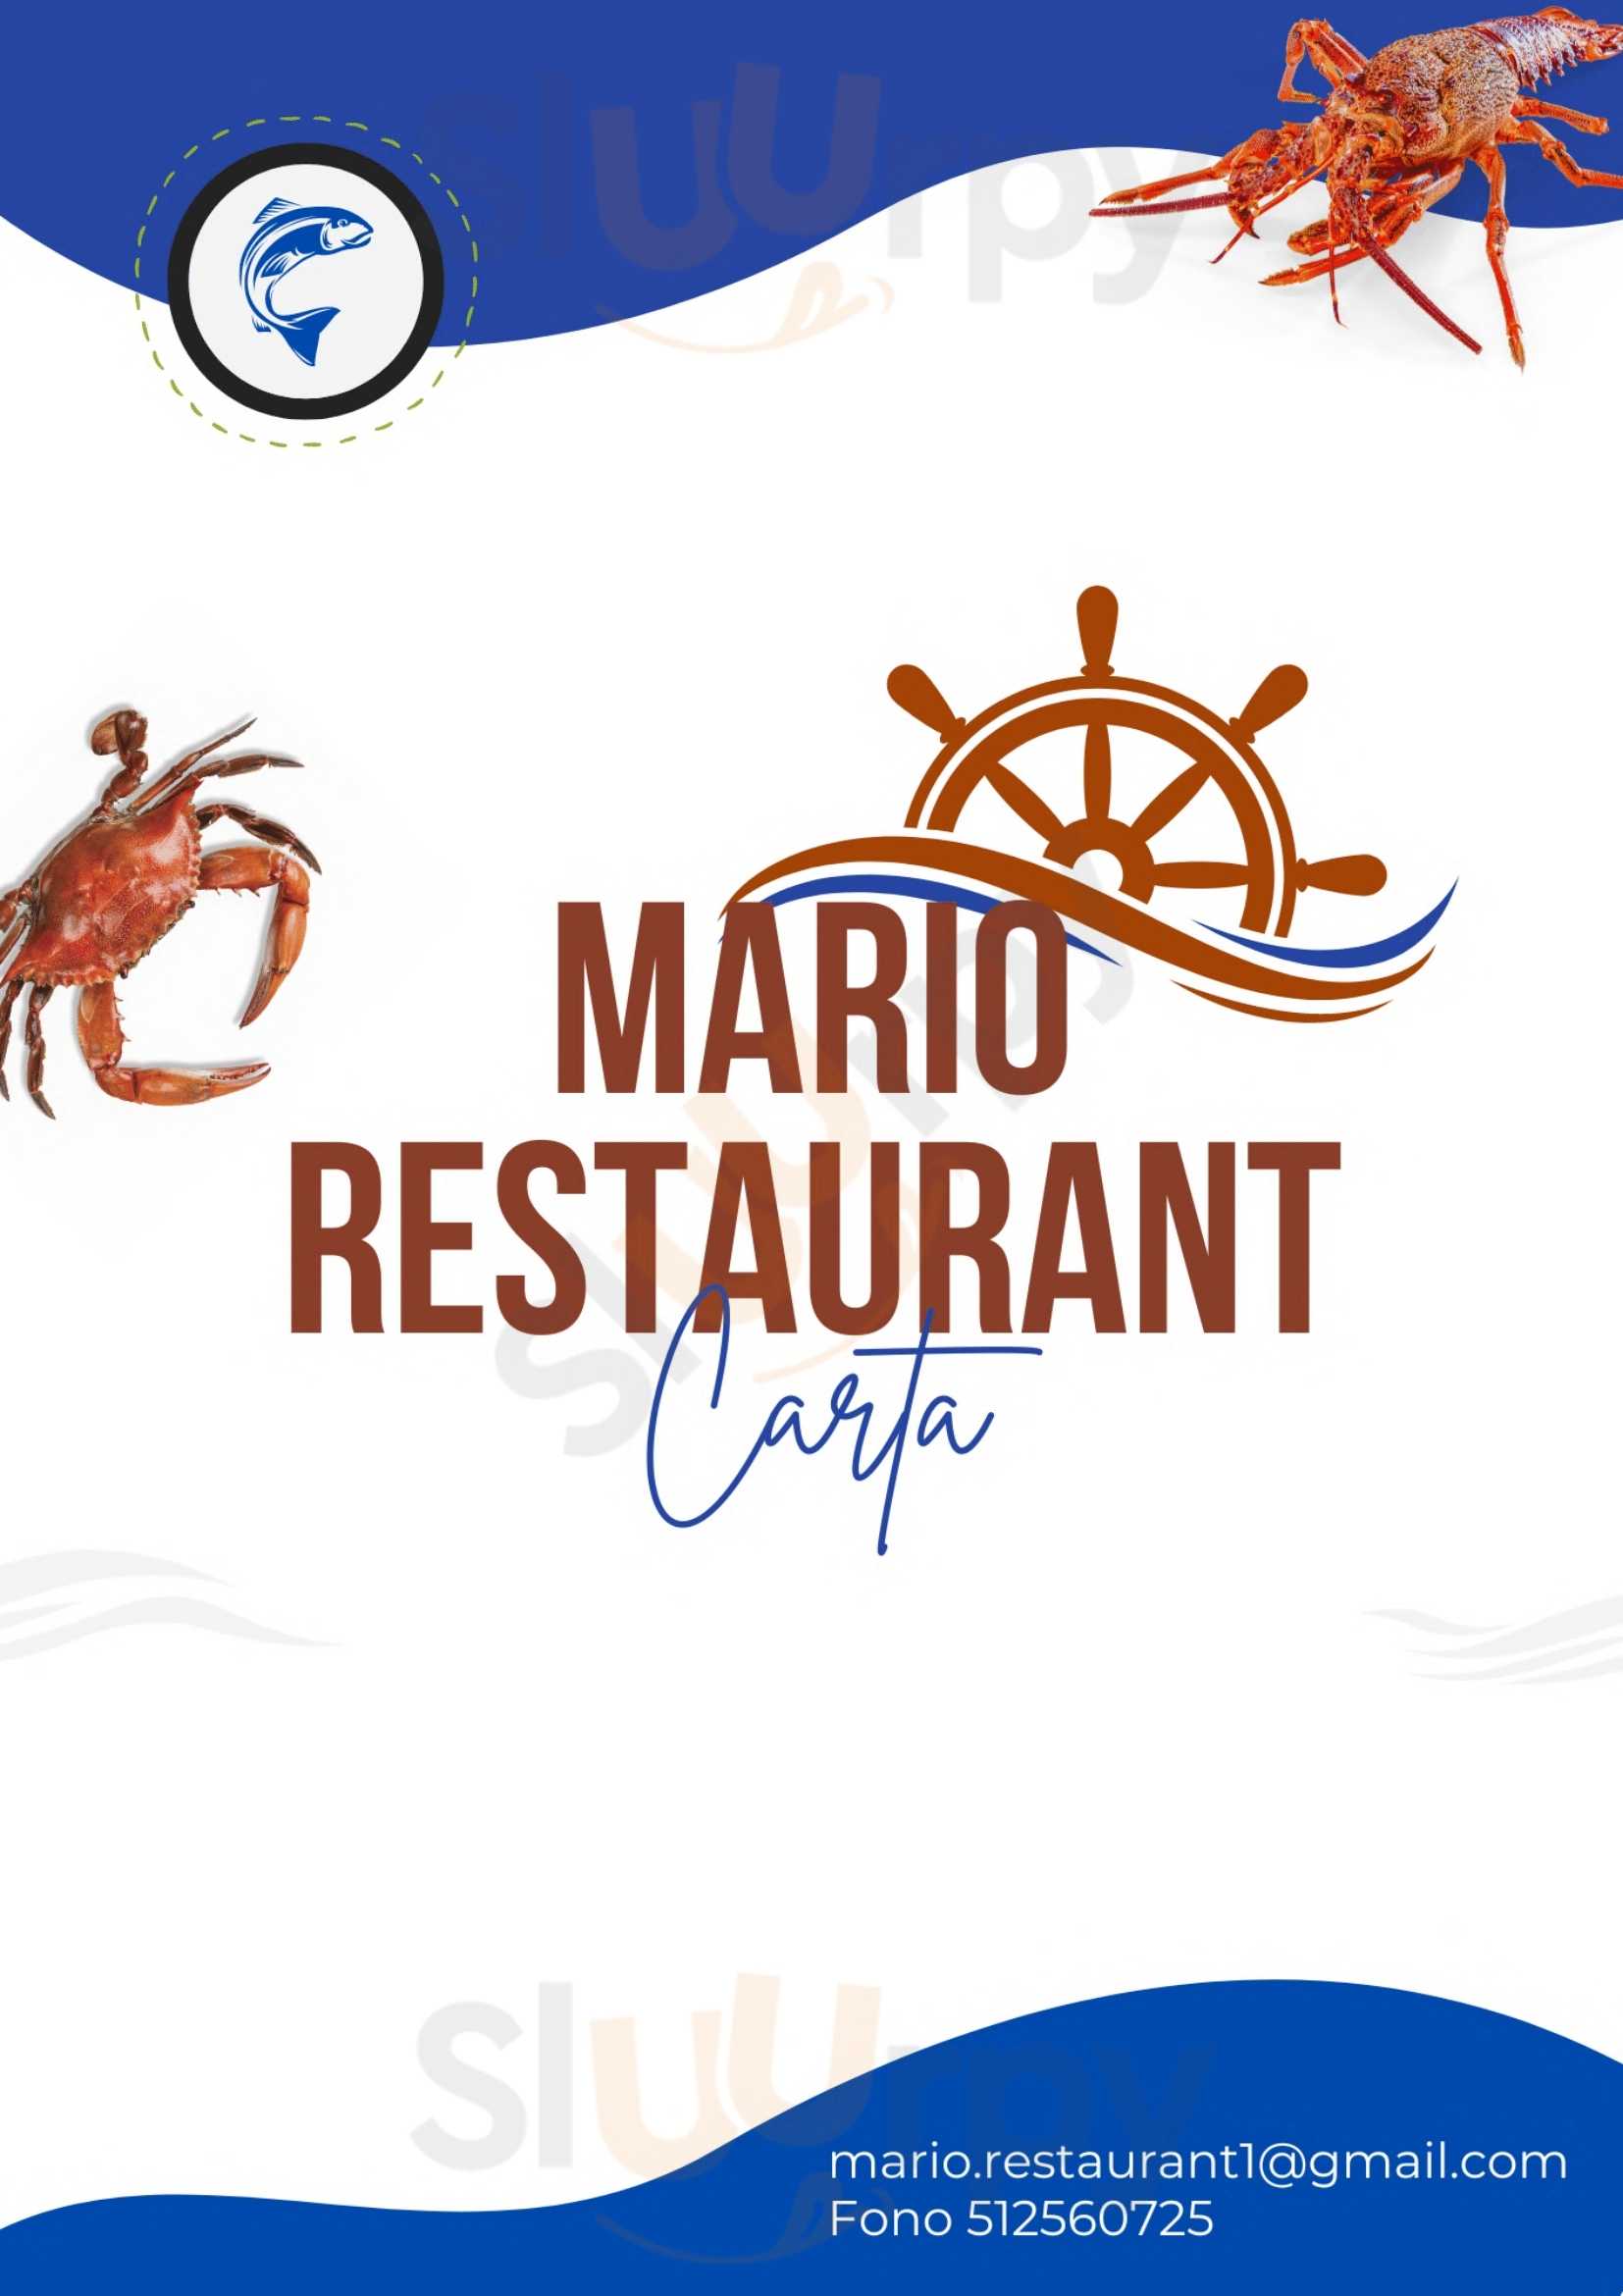 Mario Restaurant Coquimbo Menu - 1